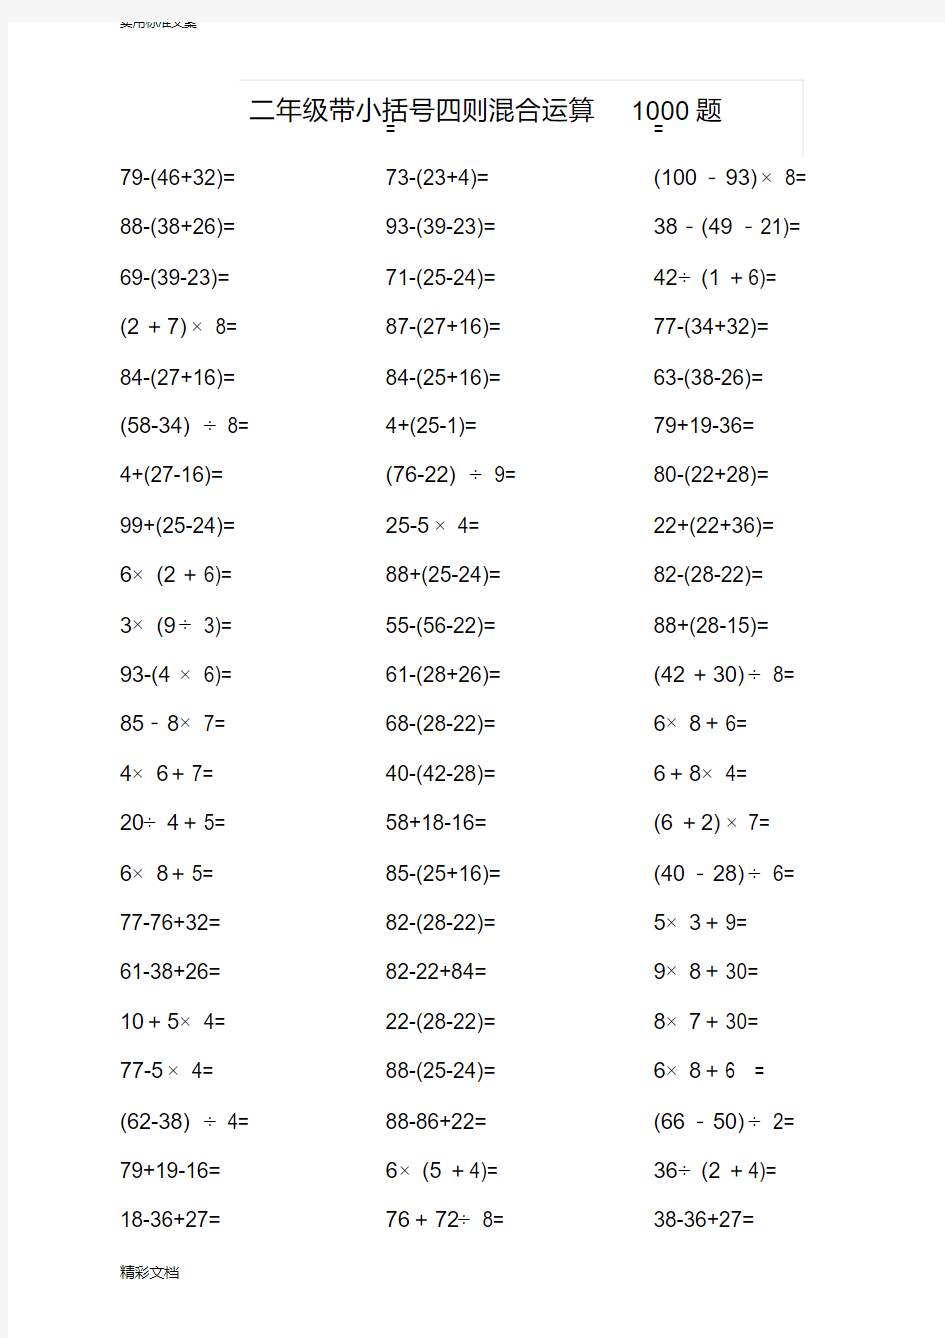 (完整)二年级带小括号四则混合运算1000题